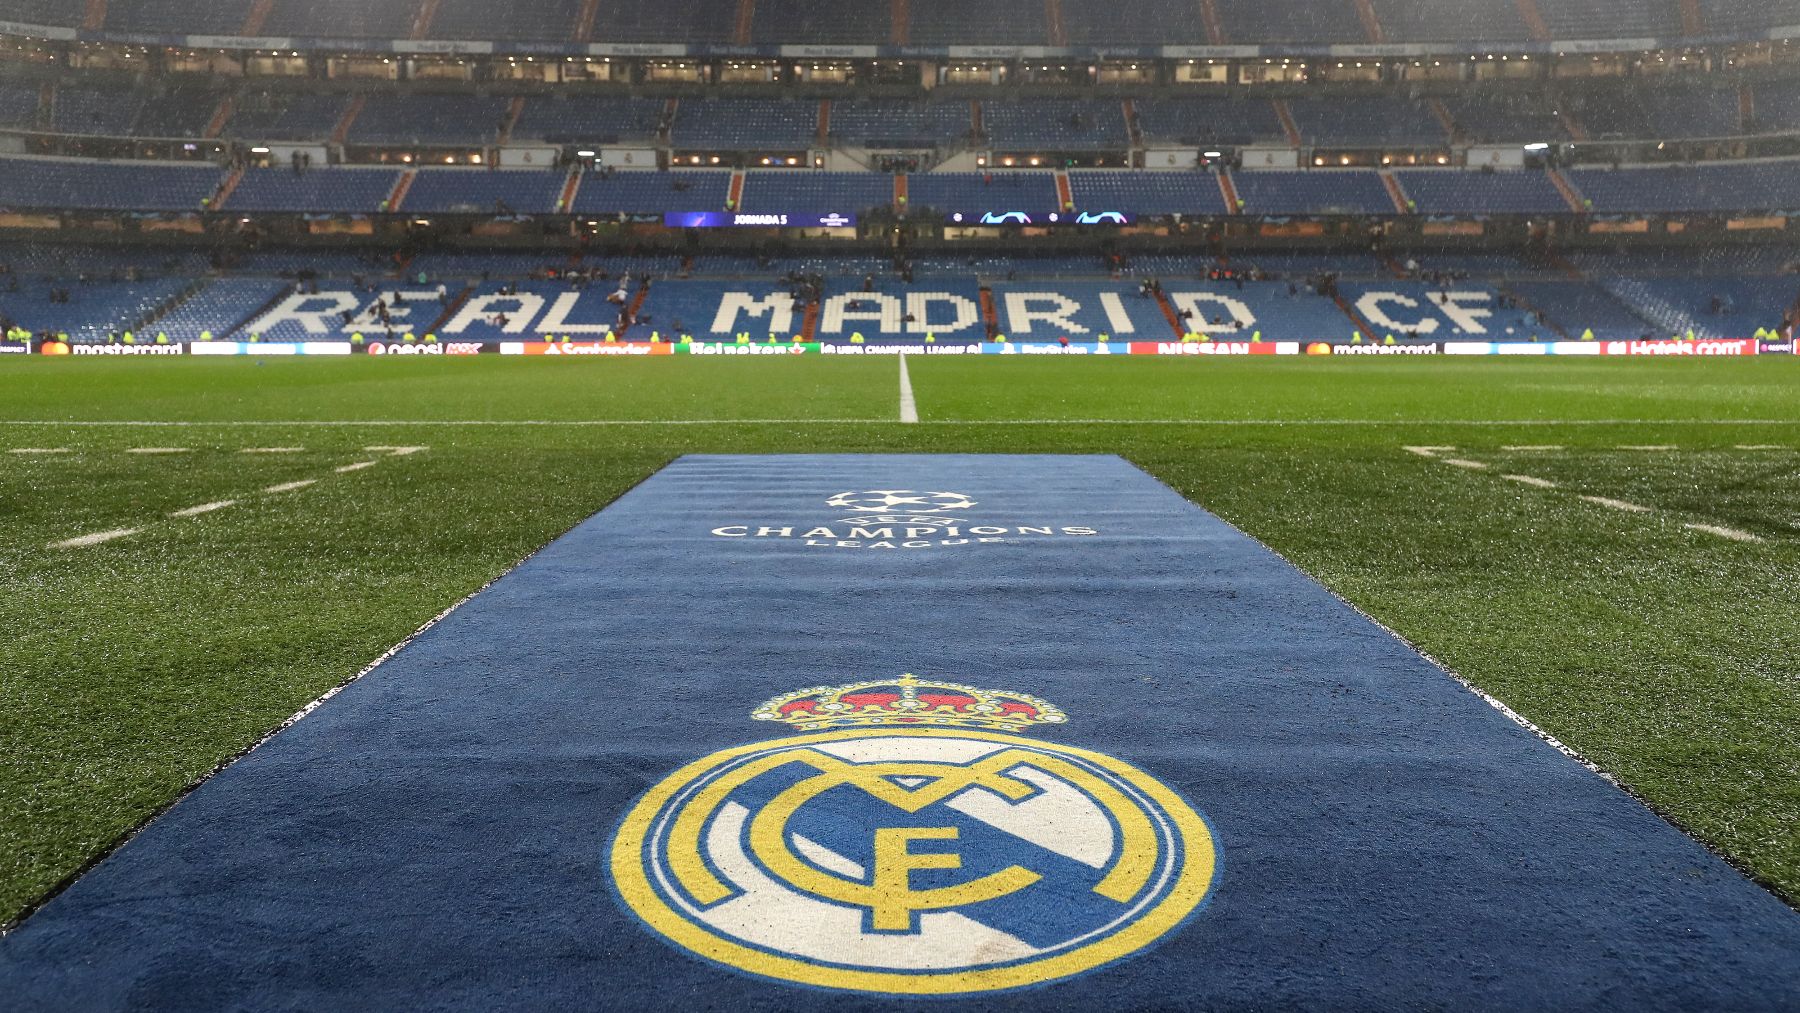 Historia, significado y todos los datos del escudo del Real Madrid